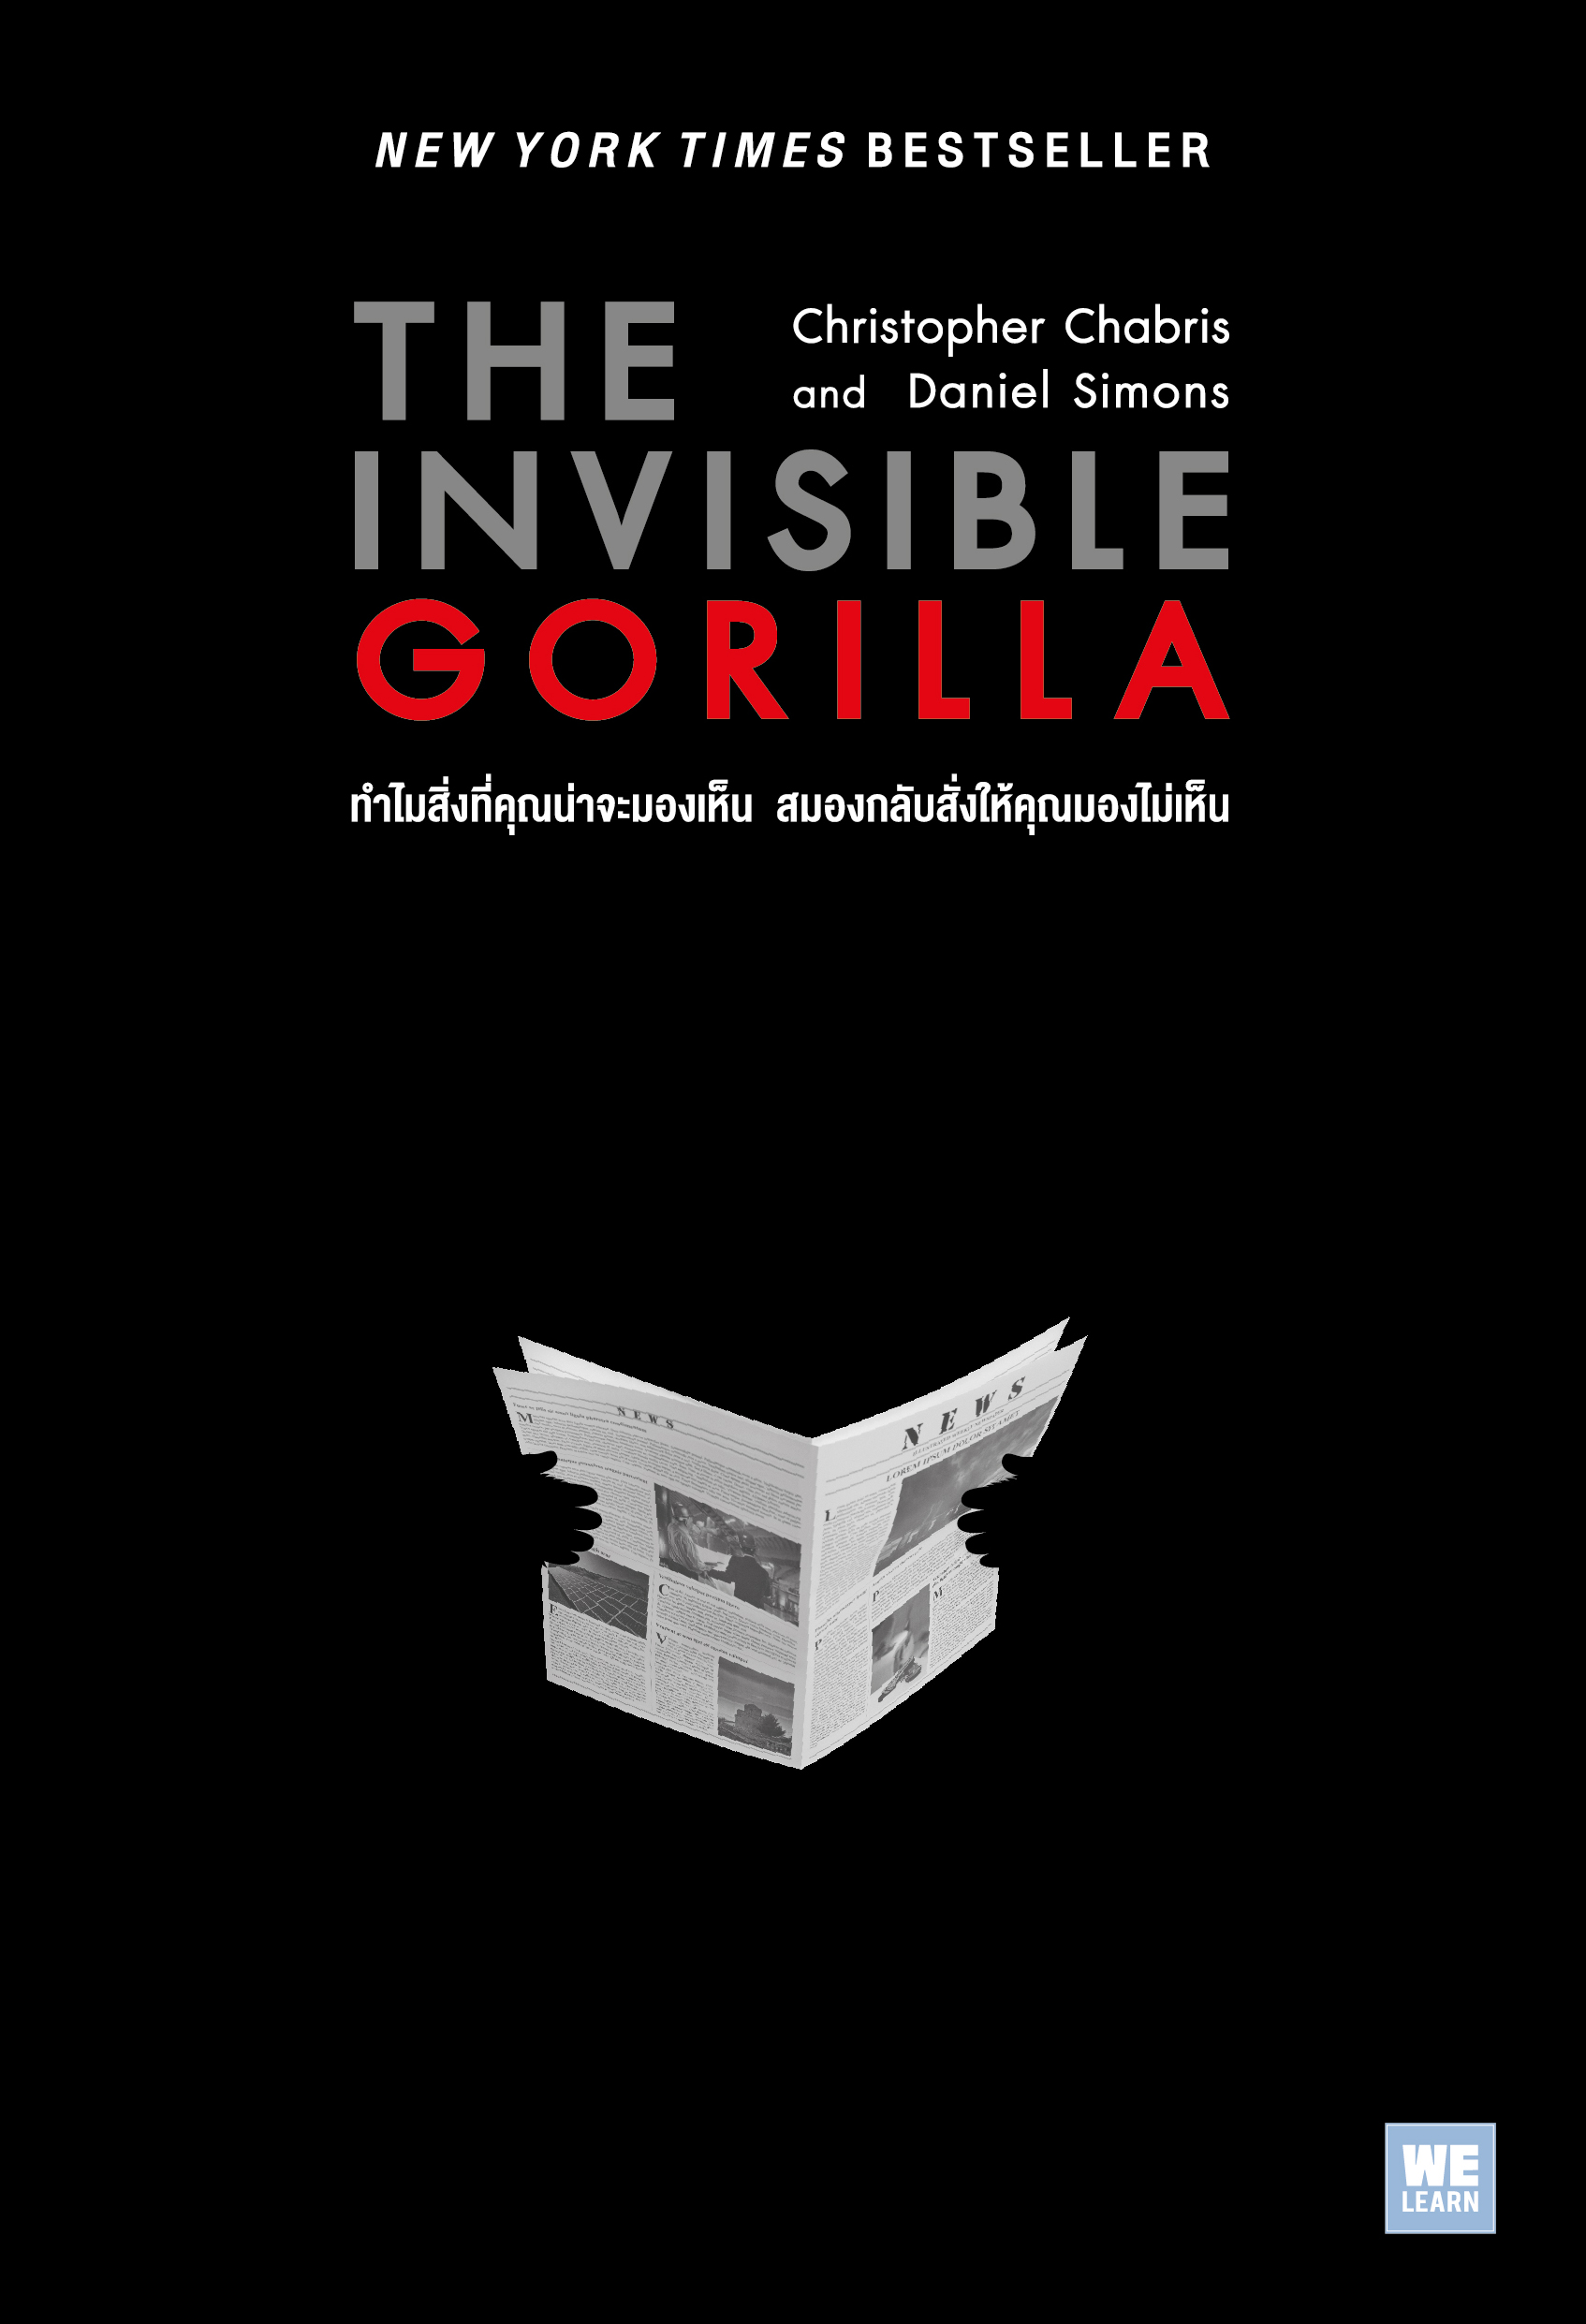 ทำไมสิ่งที่คุณน่าจะมองเห็น สมองกลับสั่งให้คุณมองไม่เห็น  (The Invisible Gorilla)